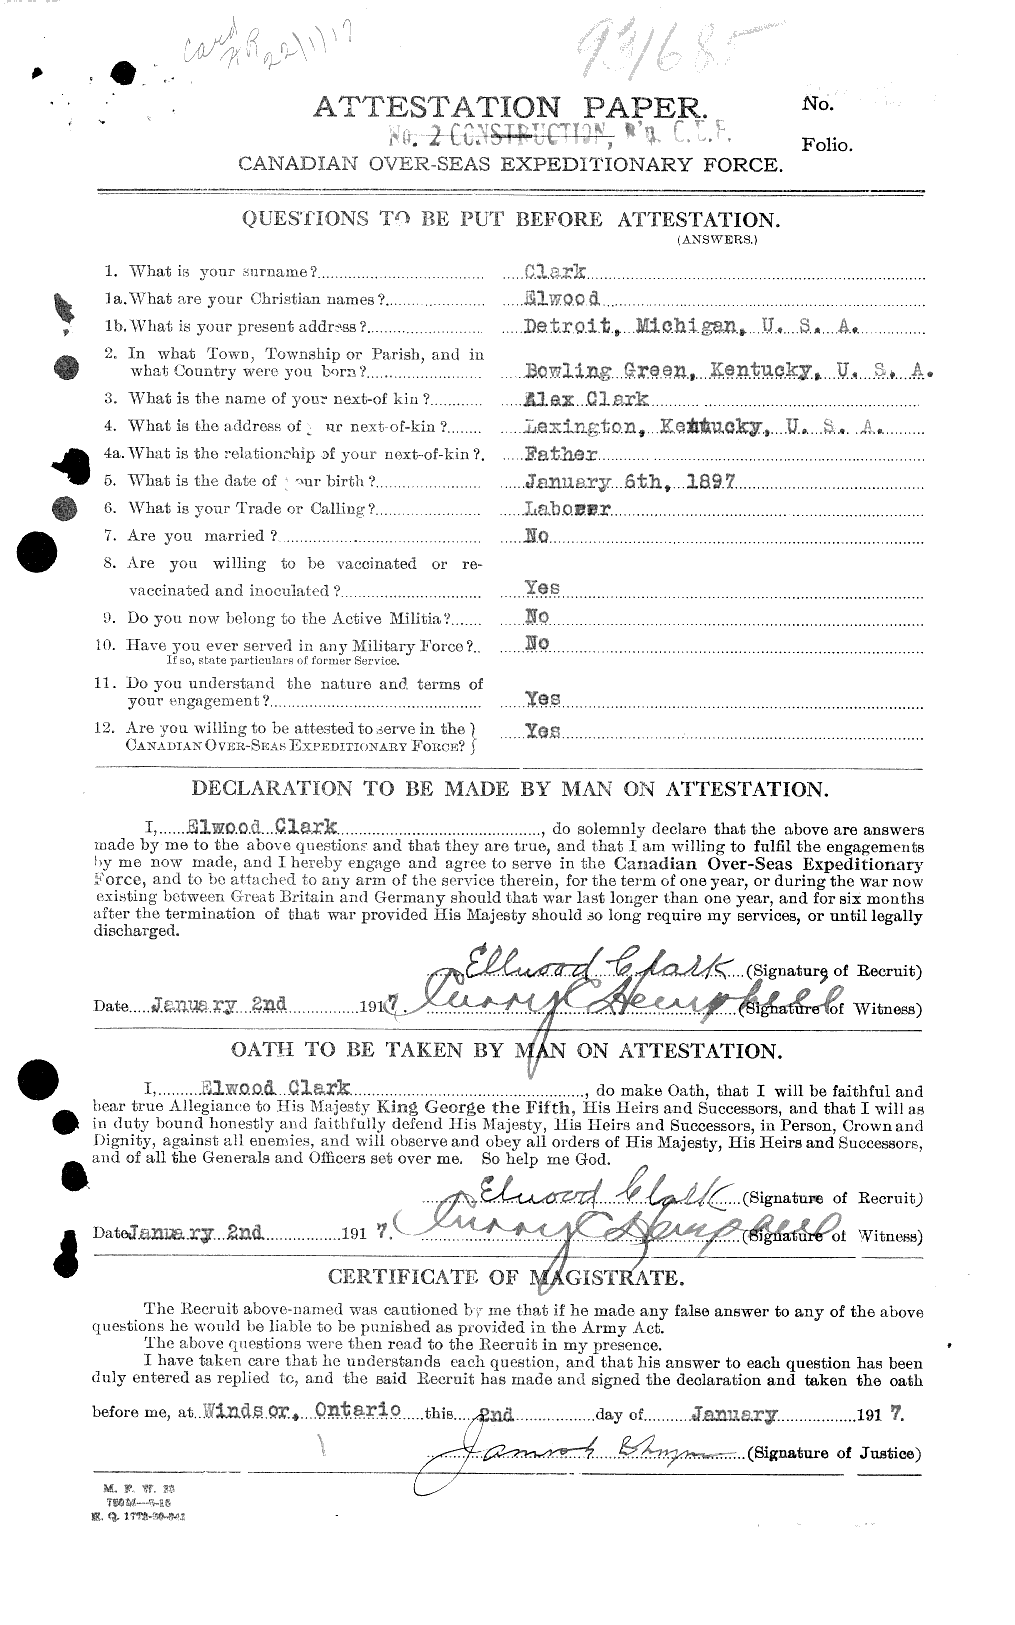 Dossiers du Personnel de la Première Guerre mondiale - CEC 024212a